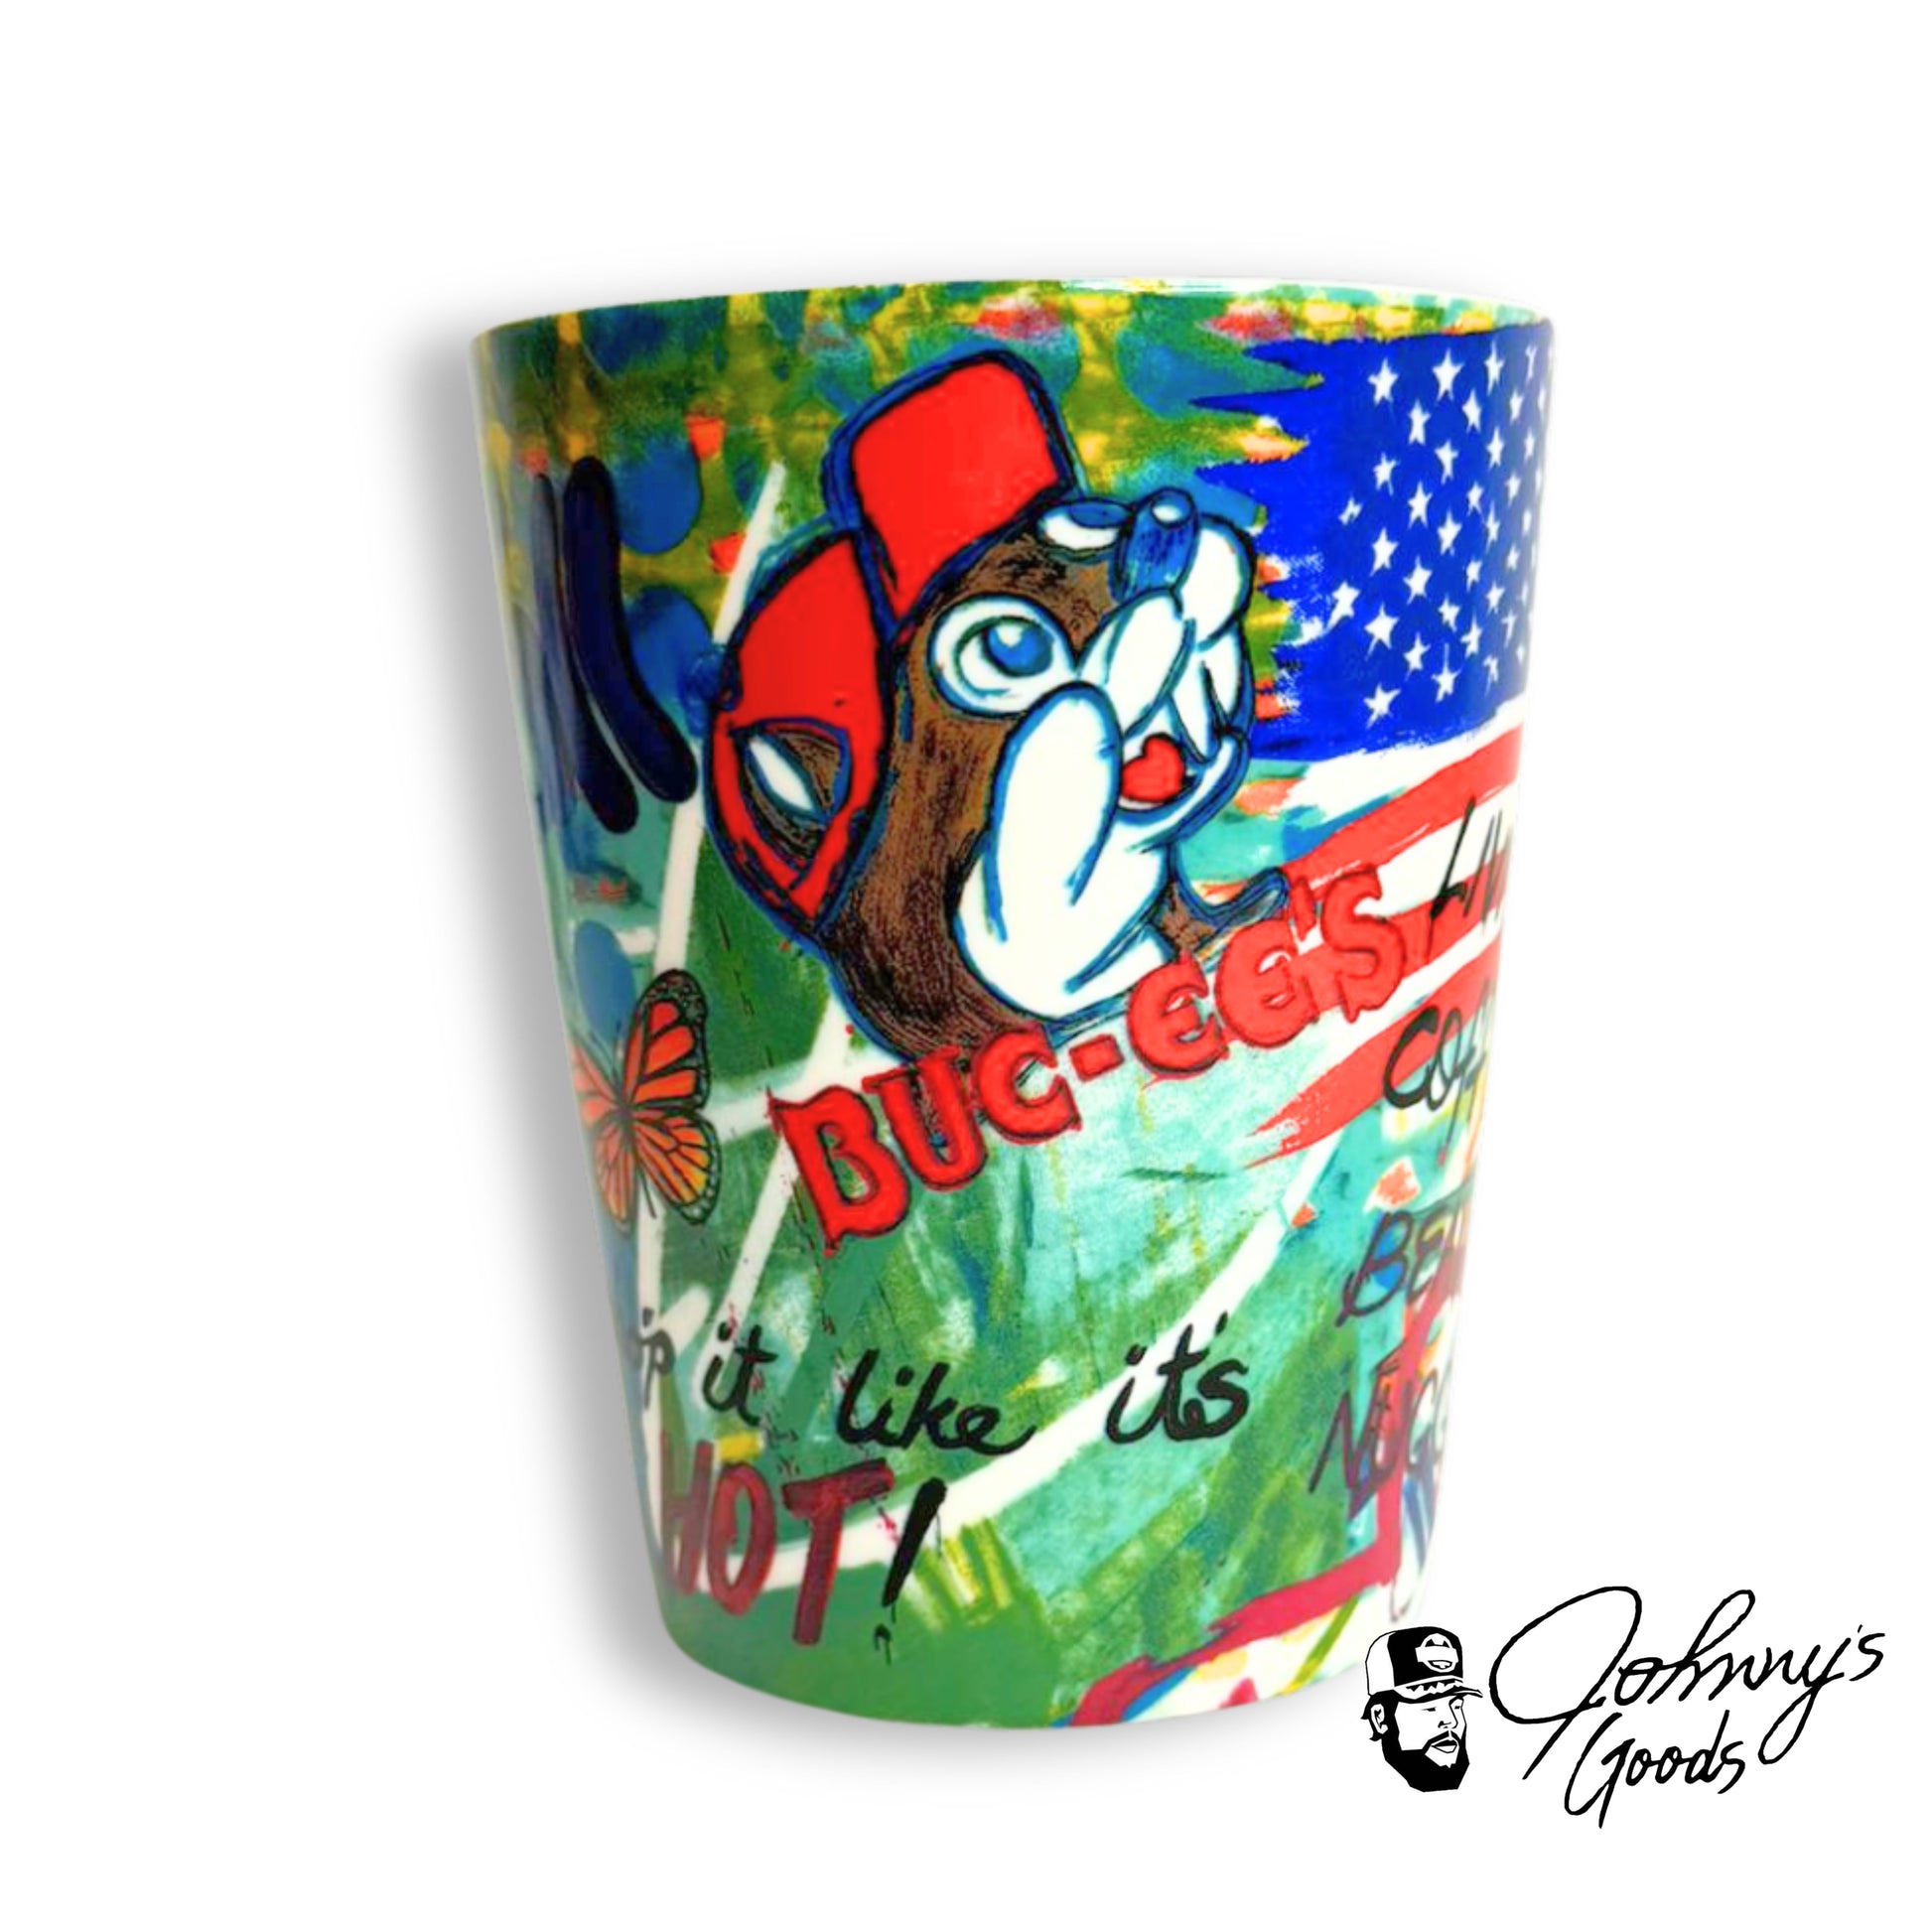 buc-ees texas pride mugs bucs coffee mug ceramic mug cup